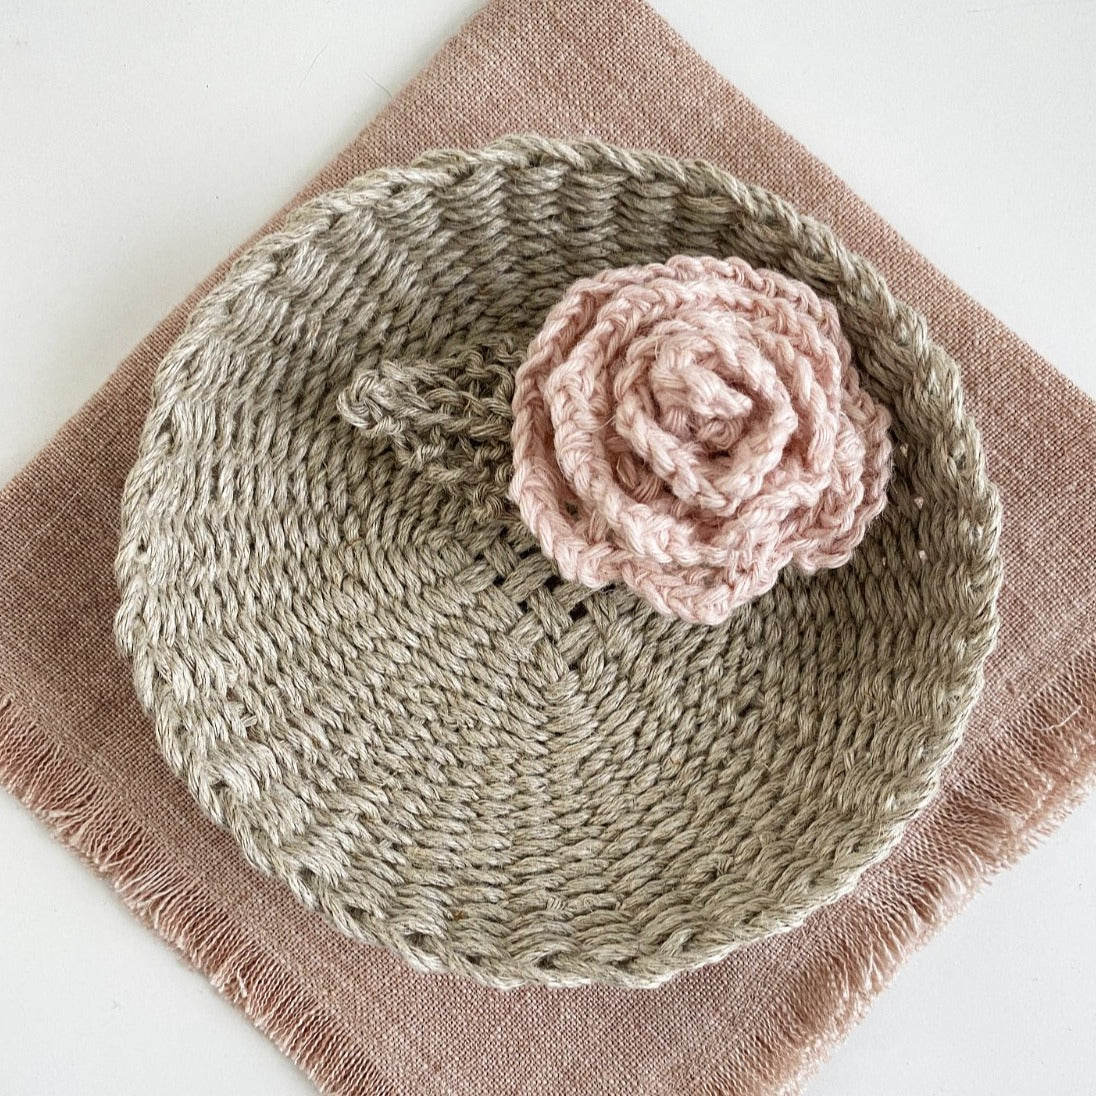 Knit Rose & Leaf Kit (Makes 2)